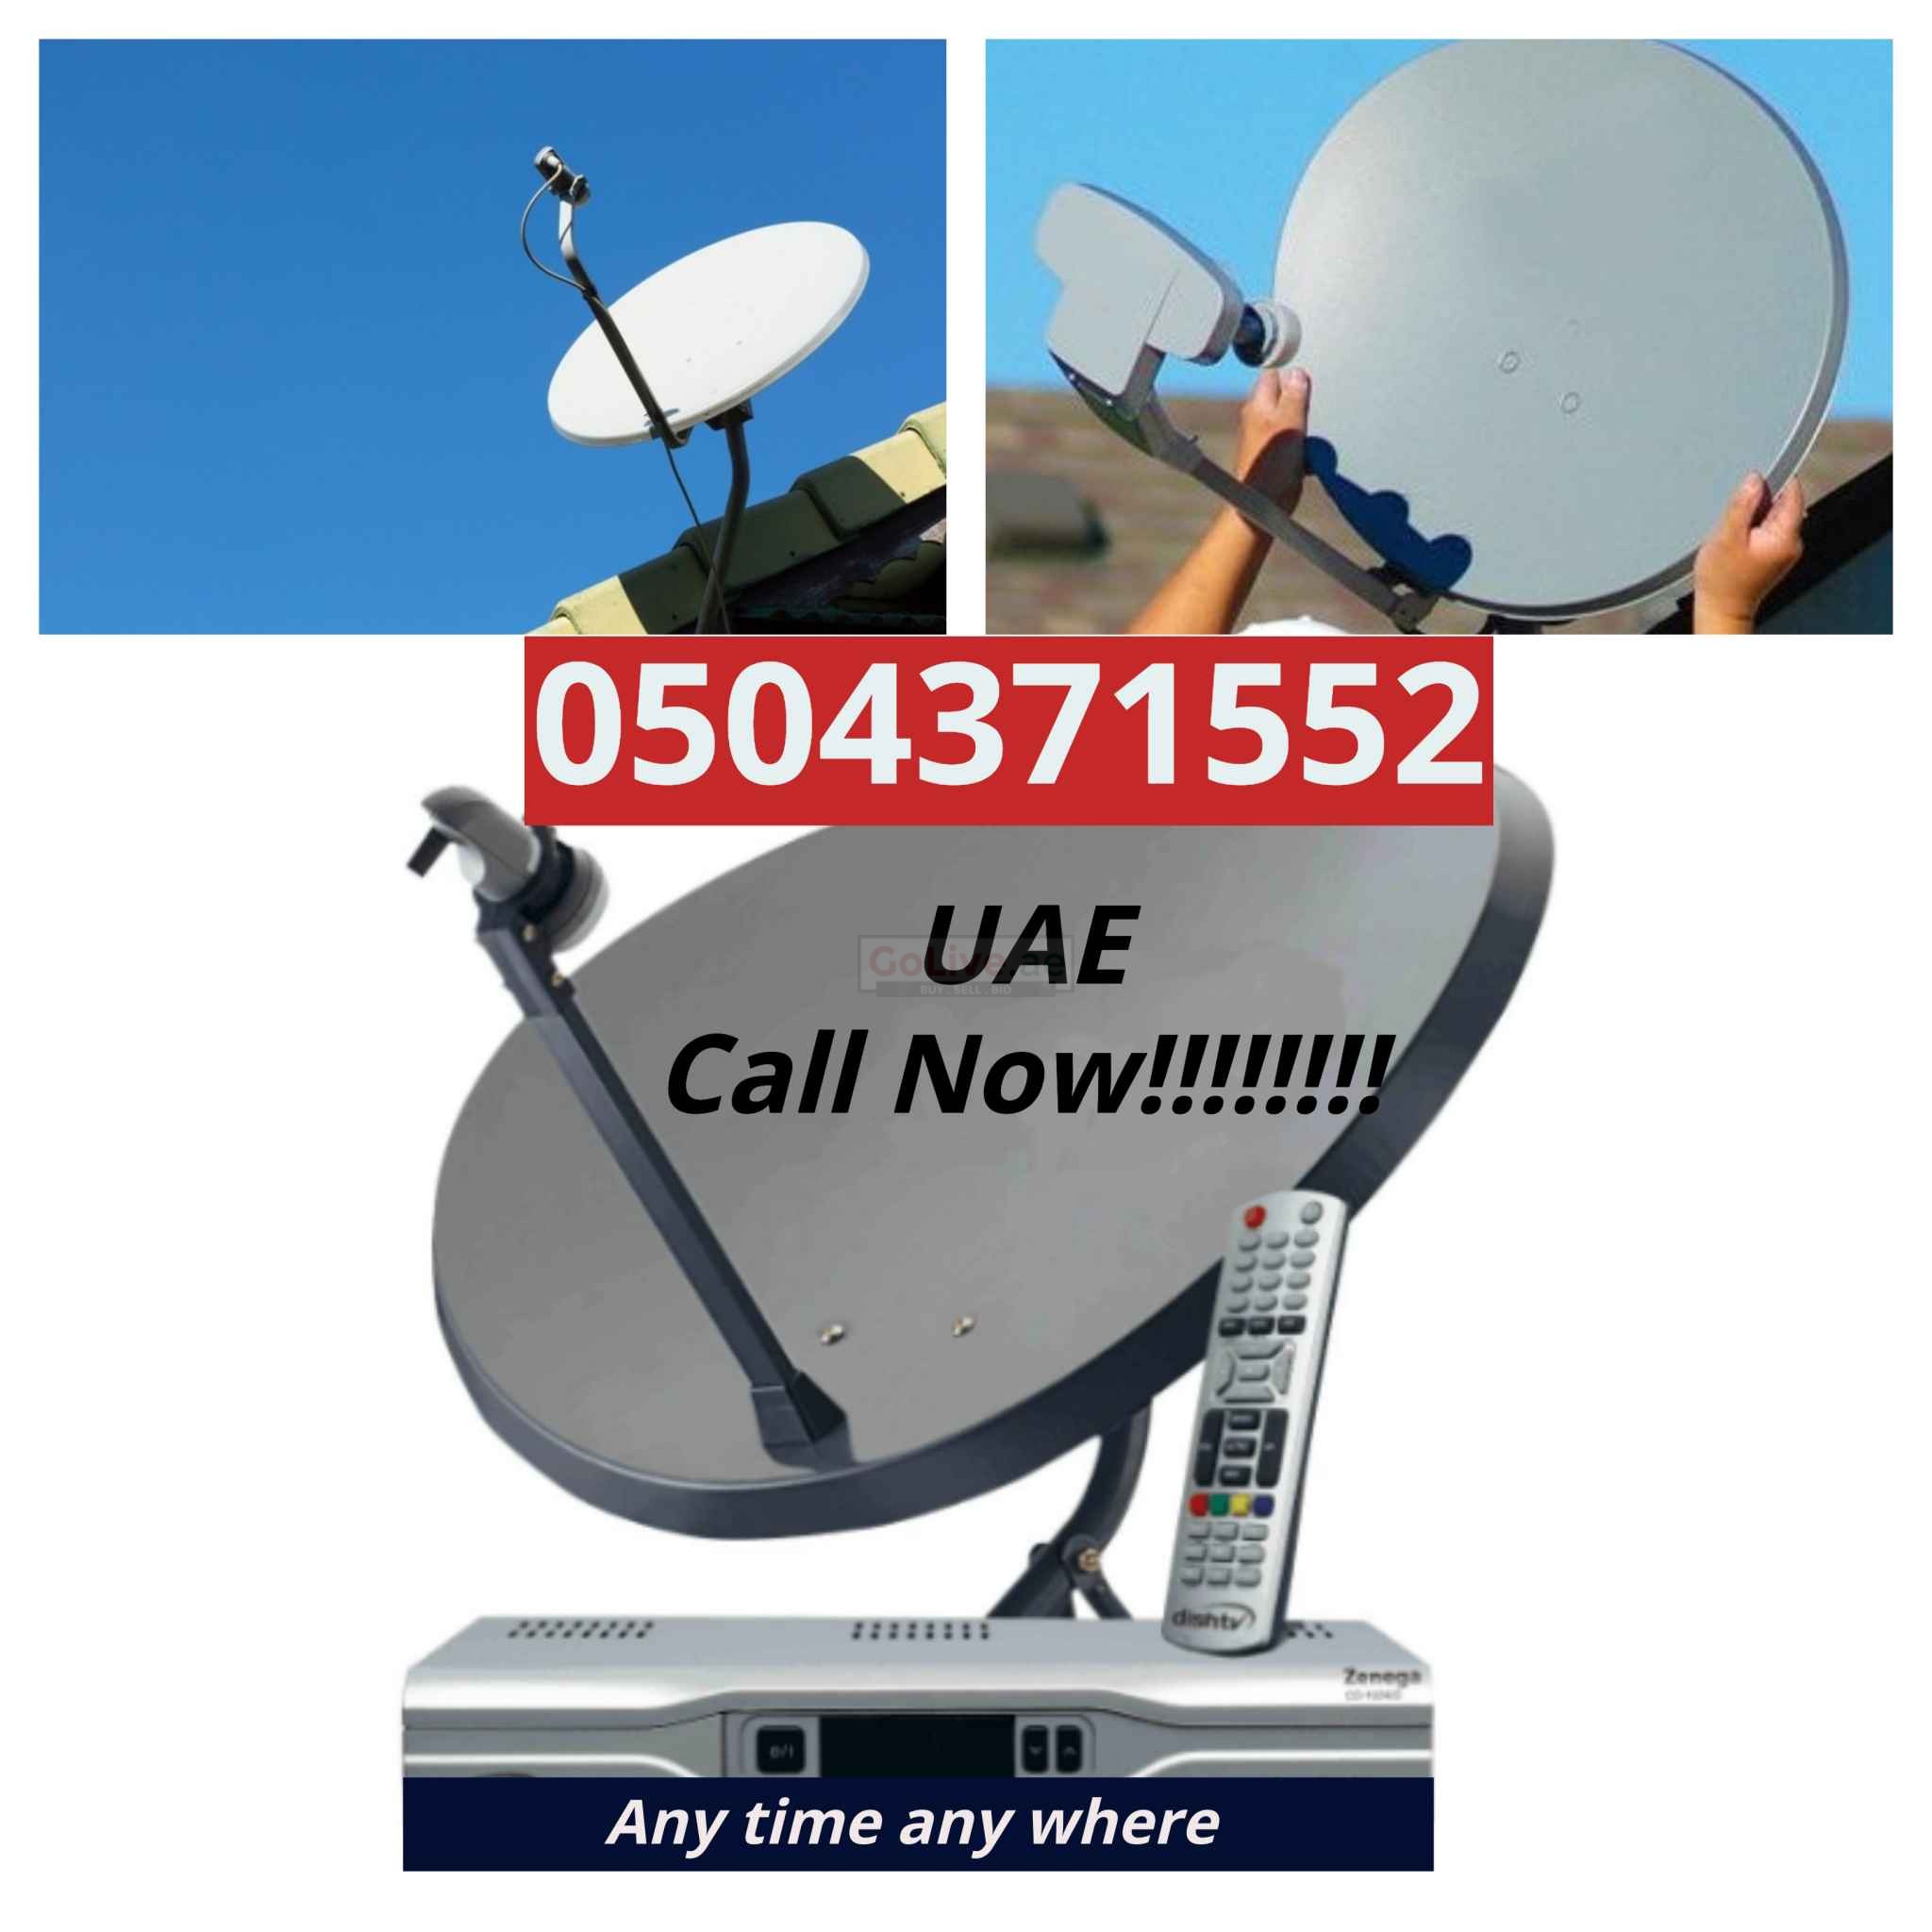 Satellite Dish tv Installation 050 4371552 in Dubai UAE